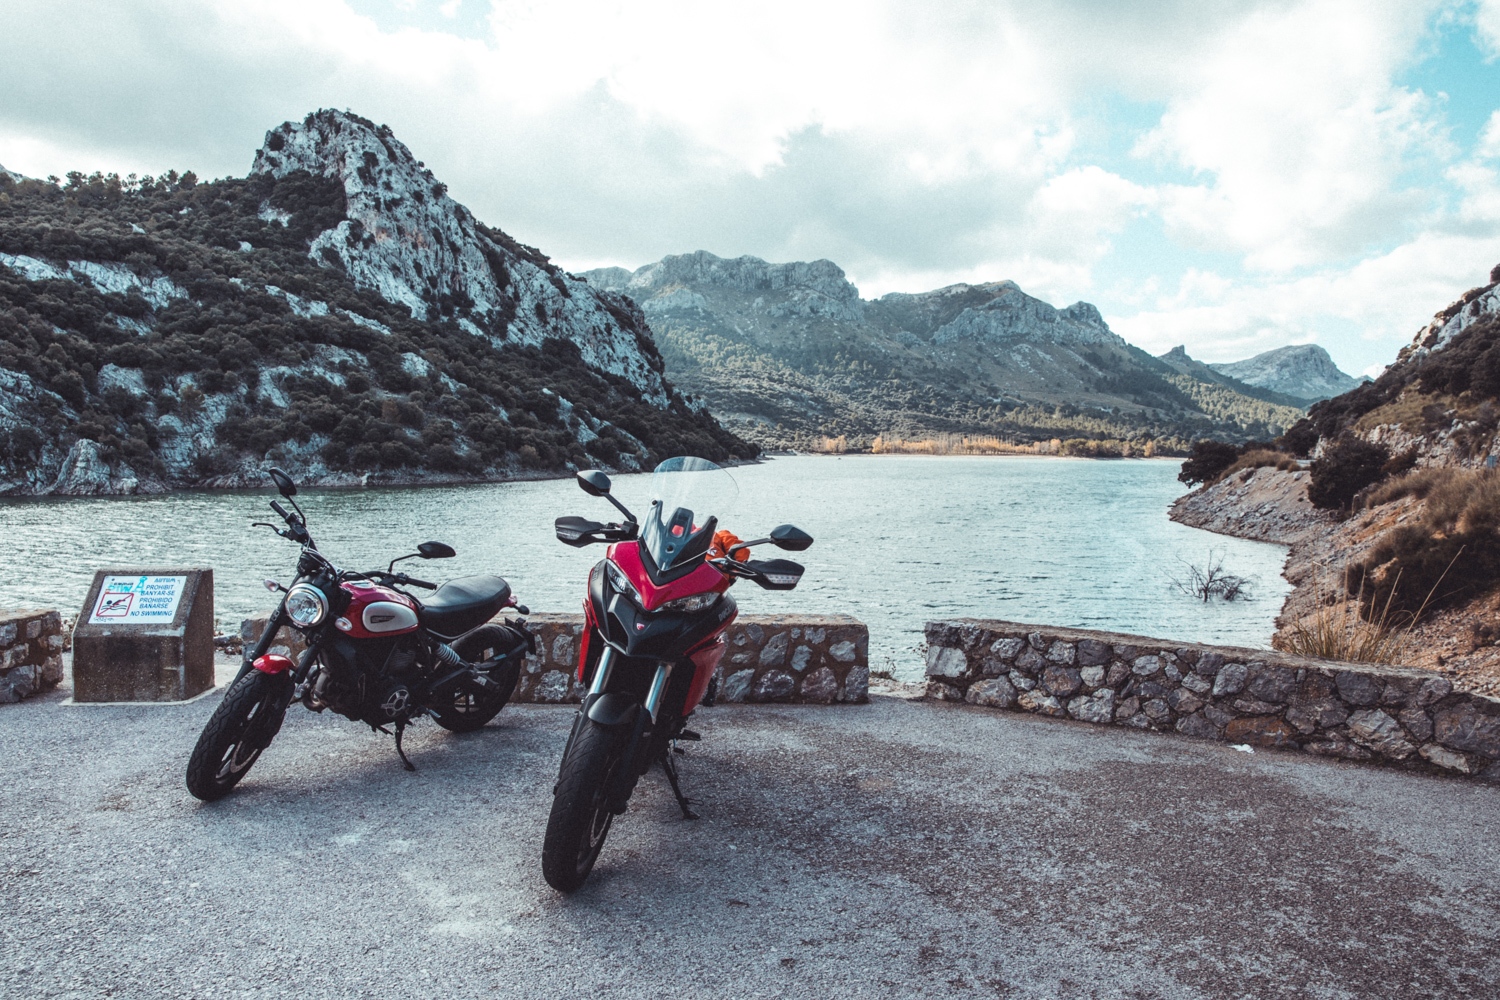 Motorradtour in Mallorca